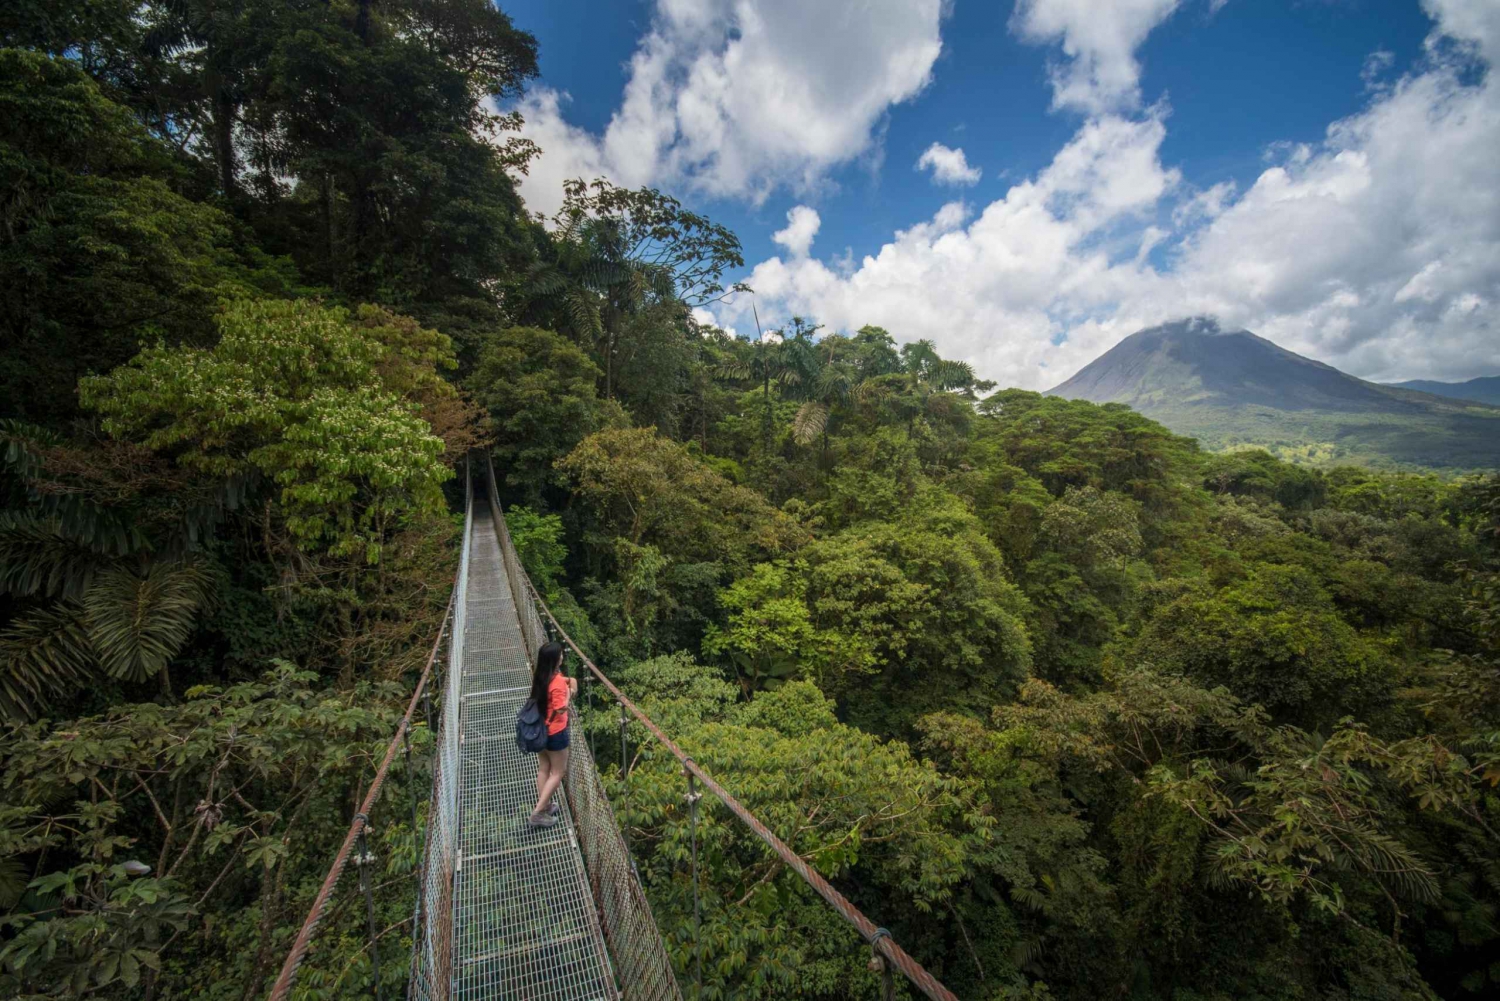 Arenal National Park: Hanging Bridges Small Group Tour